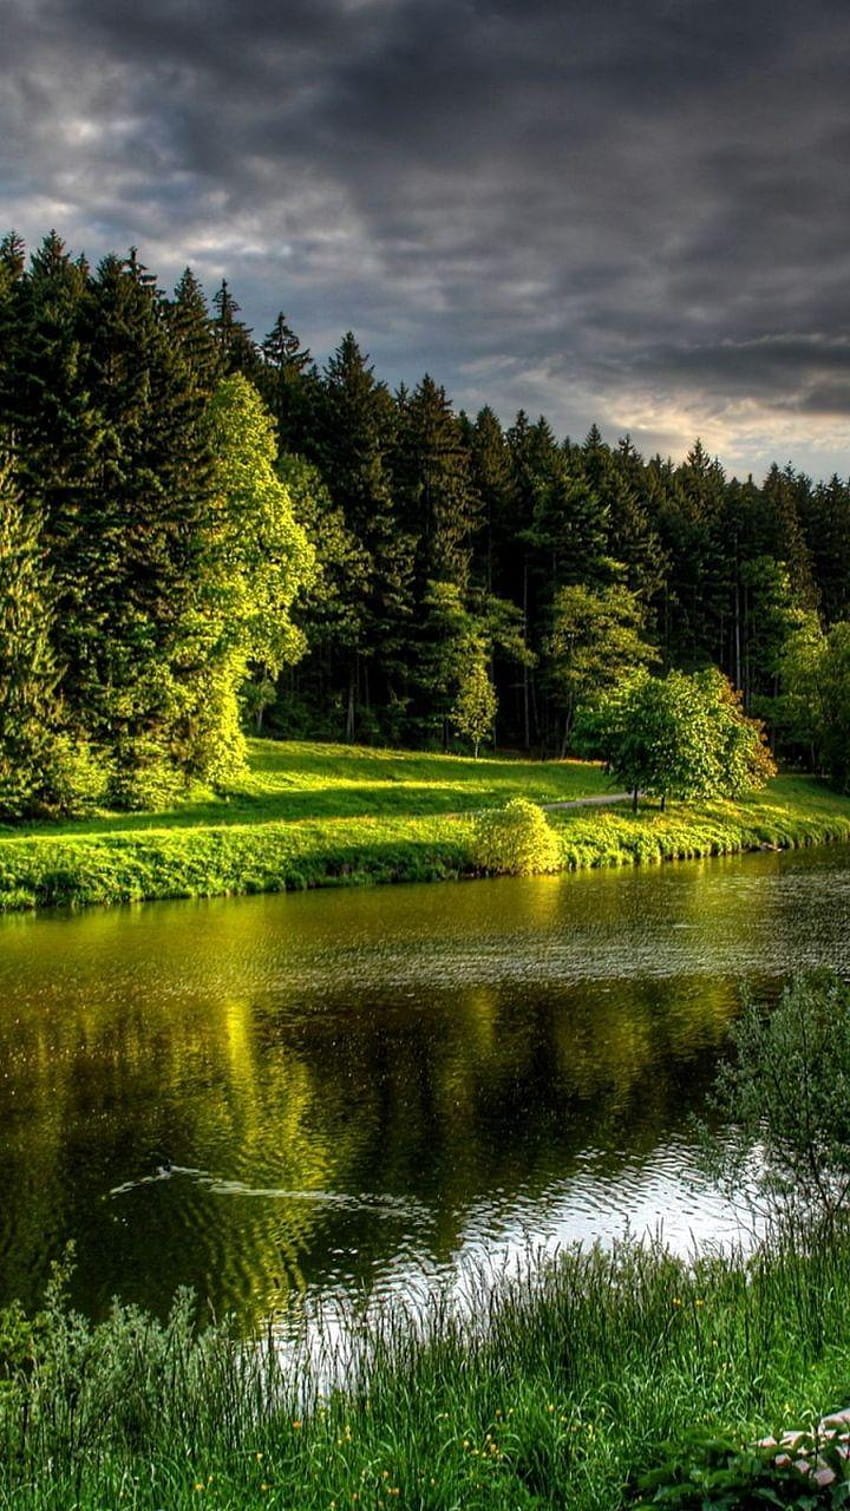 Sông, bờ biển, cỏ cây, ghế đá, mùa hè và cảnh thơ mộng trong thiên nhiên xanh tươi. Hãy cùng chiêm ngưỡng những hình ảnh đẹp lung linh về hoàng hôn tuyệt đẹp của thiên nhiên.